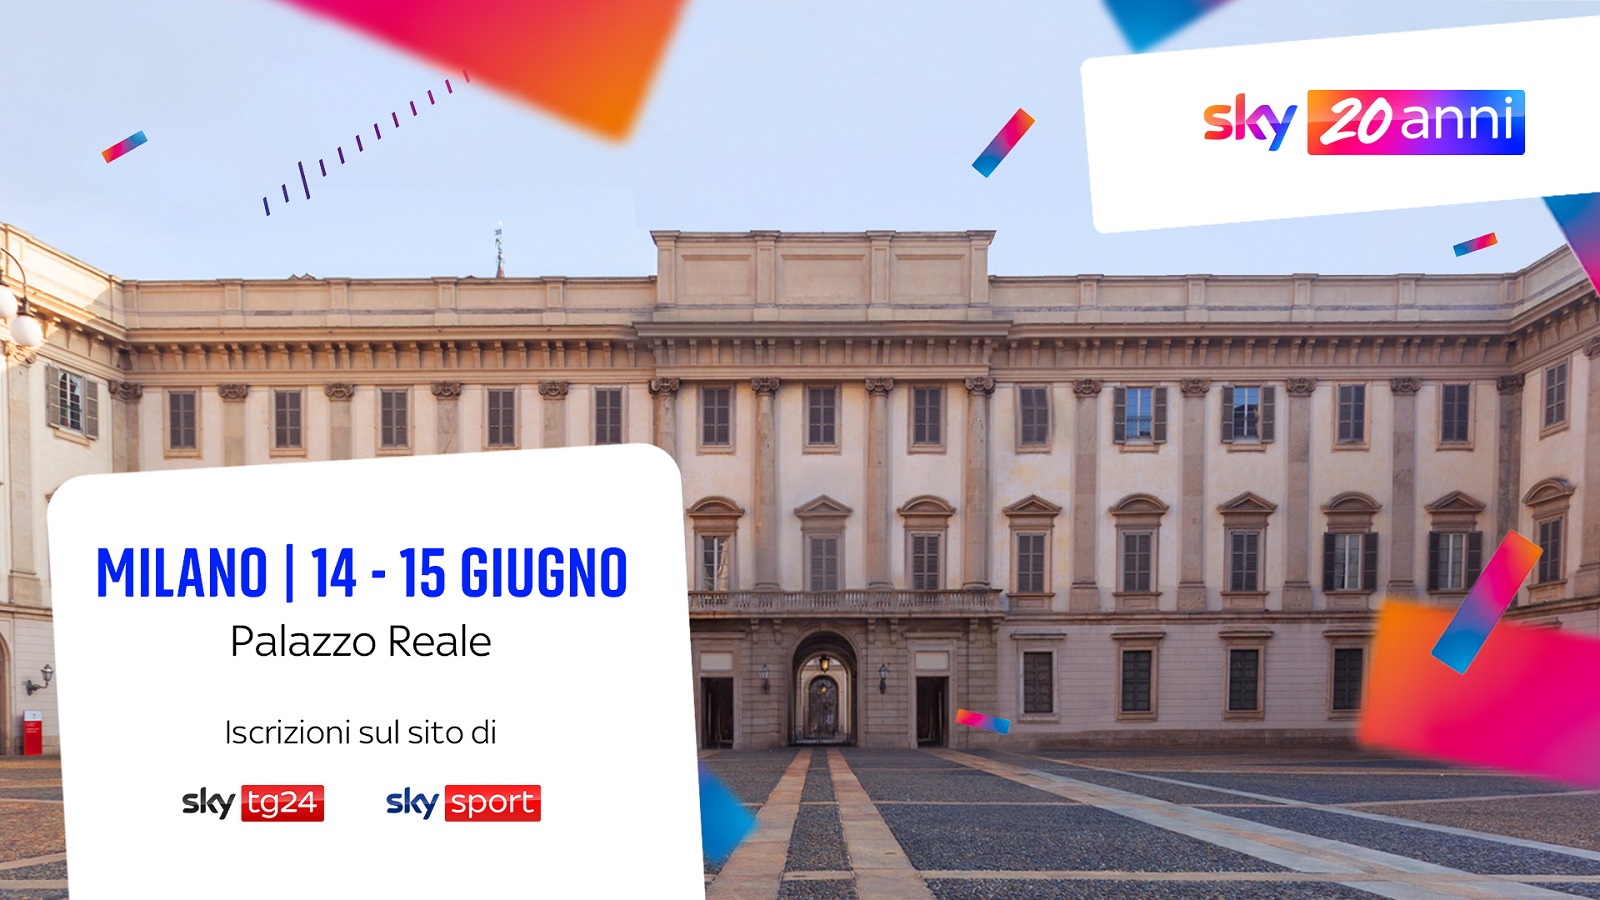 Sky compie 20 anni: arriva il grande evento a Milano a giugno